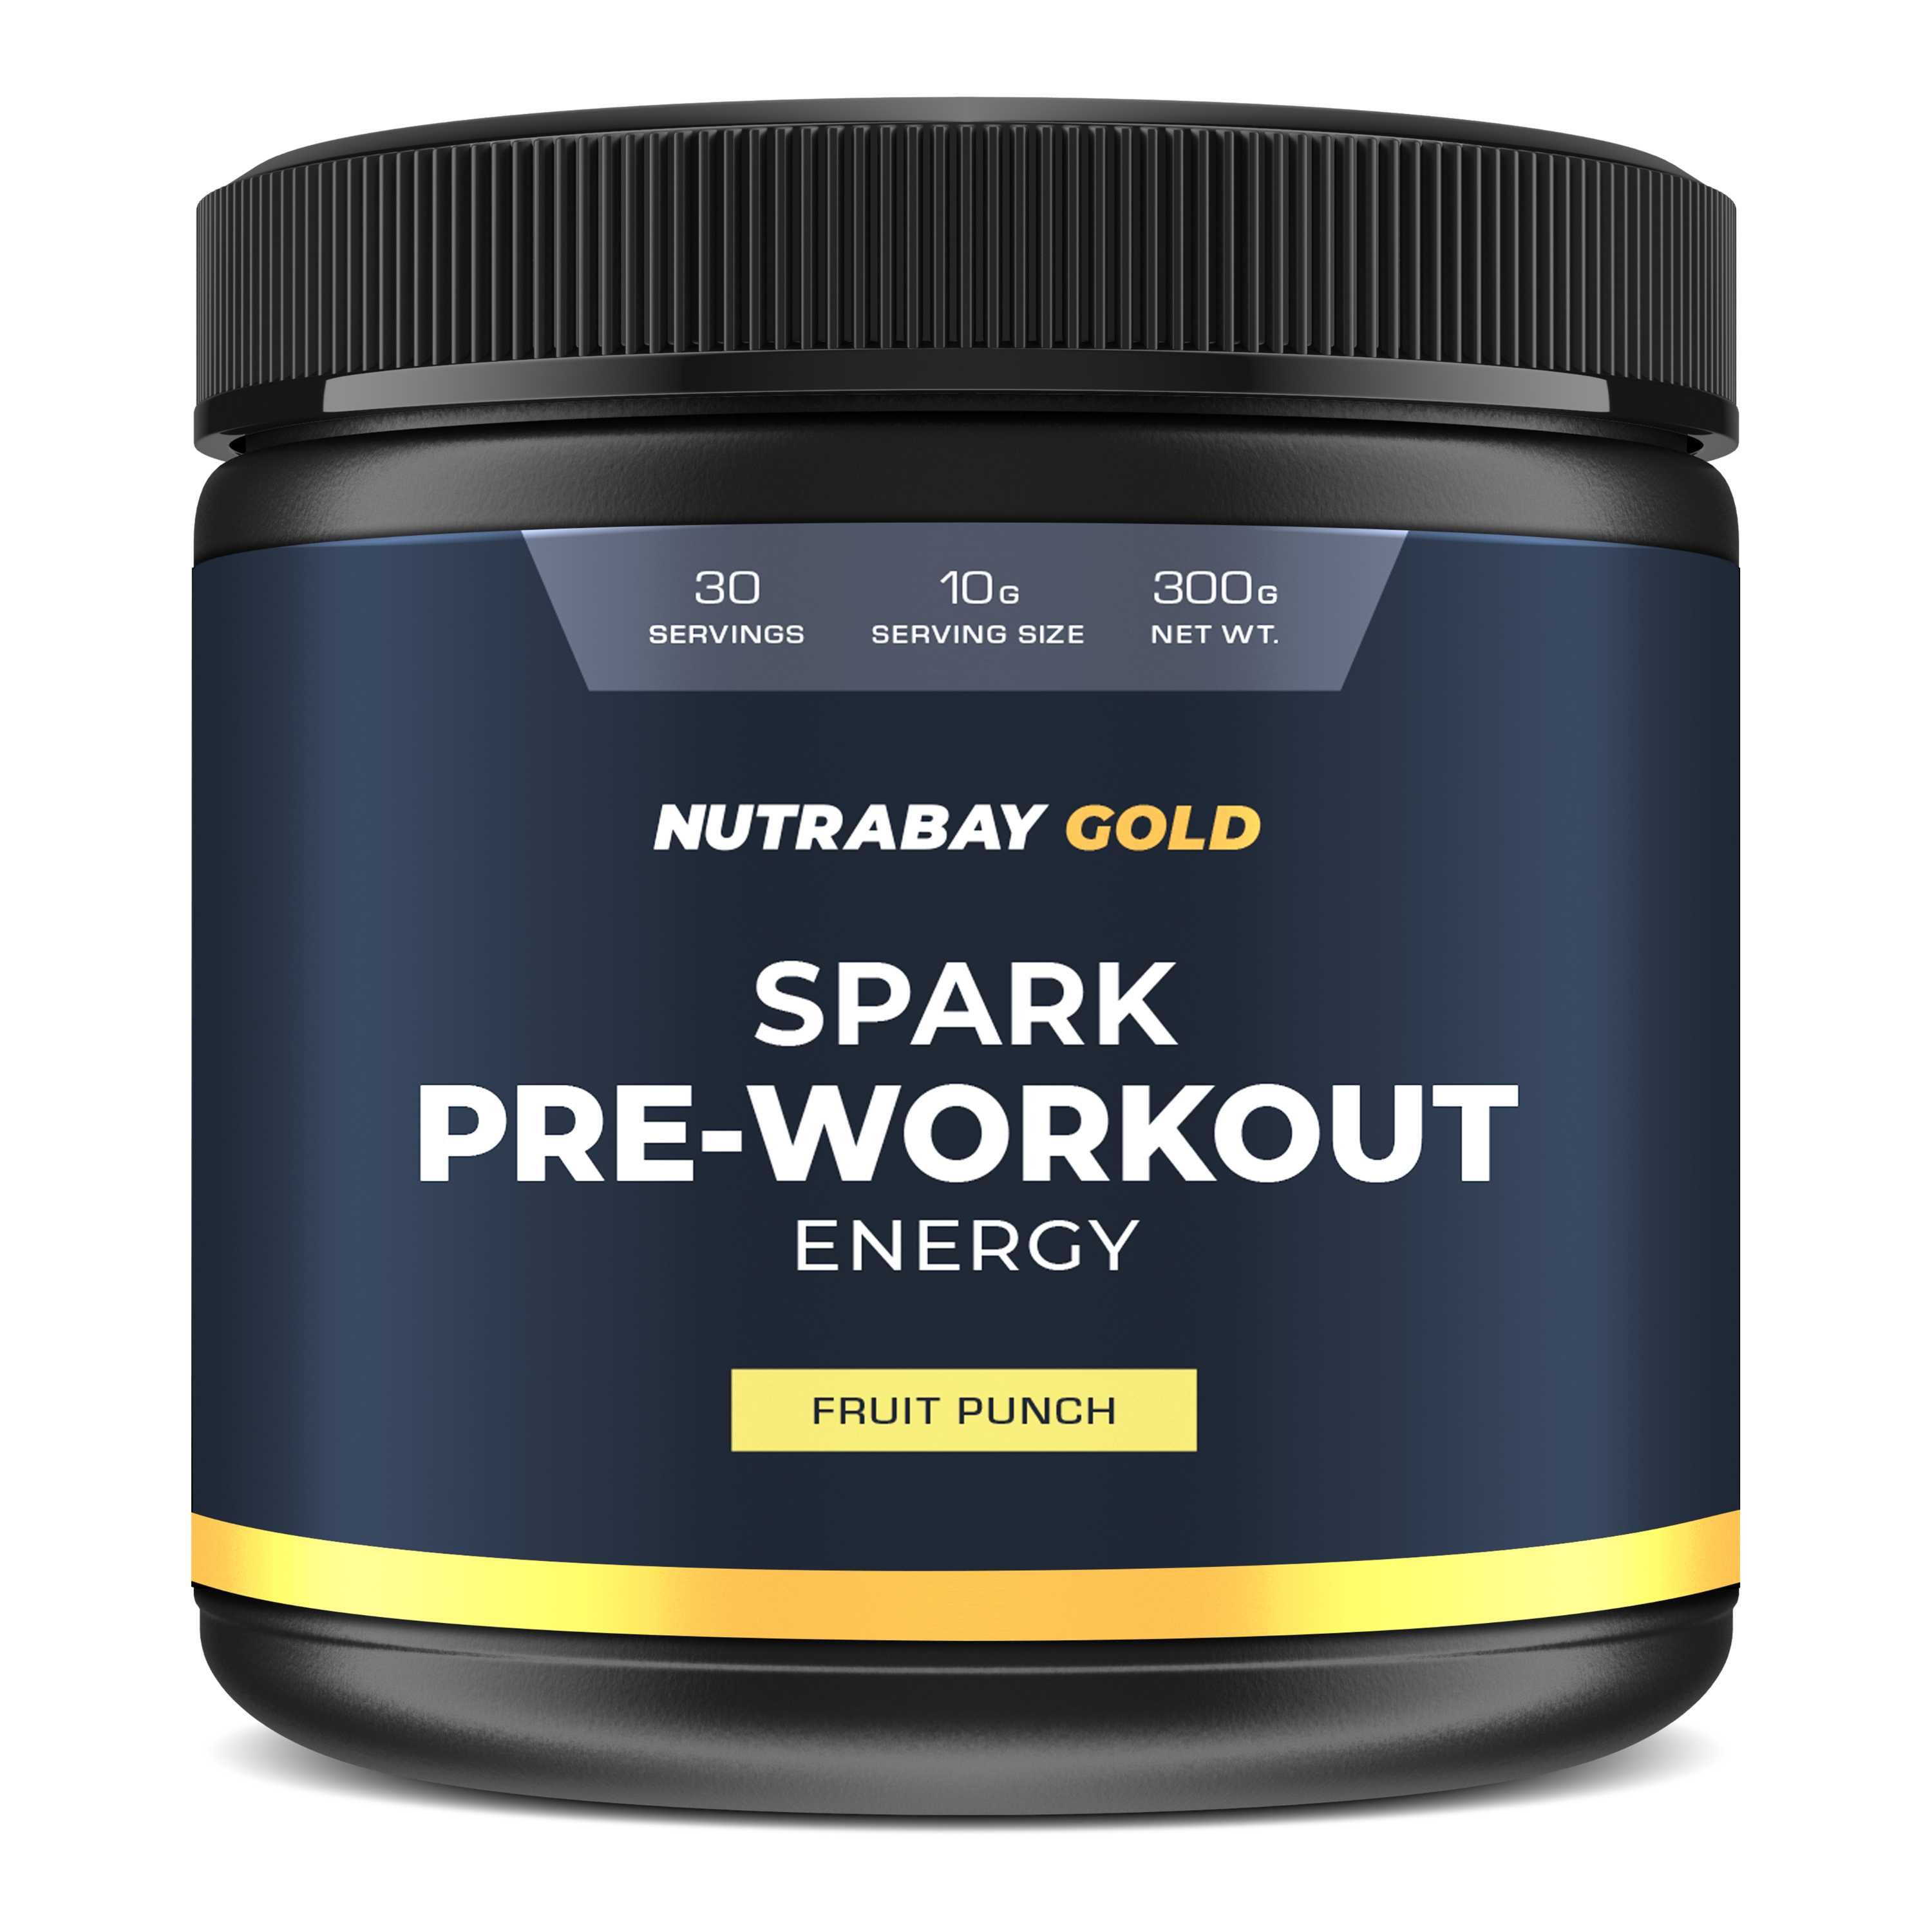 Nutrabay Gold Spark Pre-Workout Image